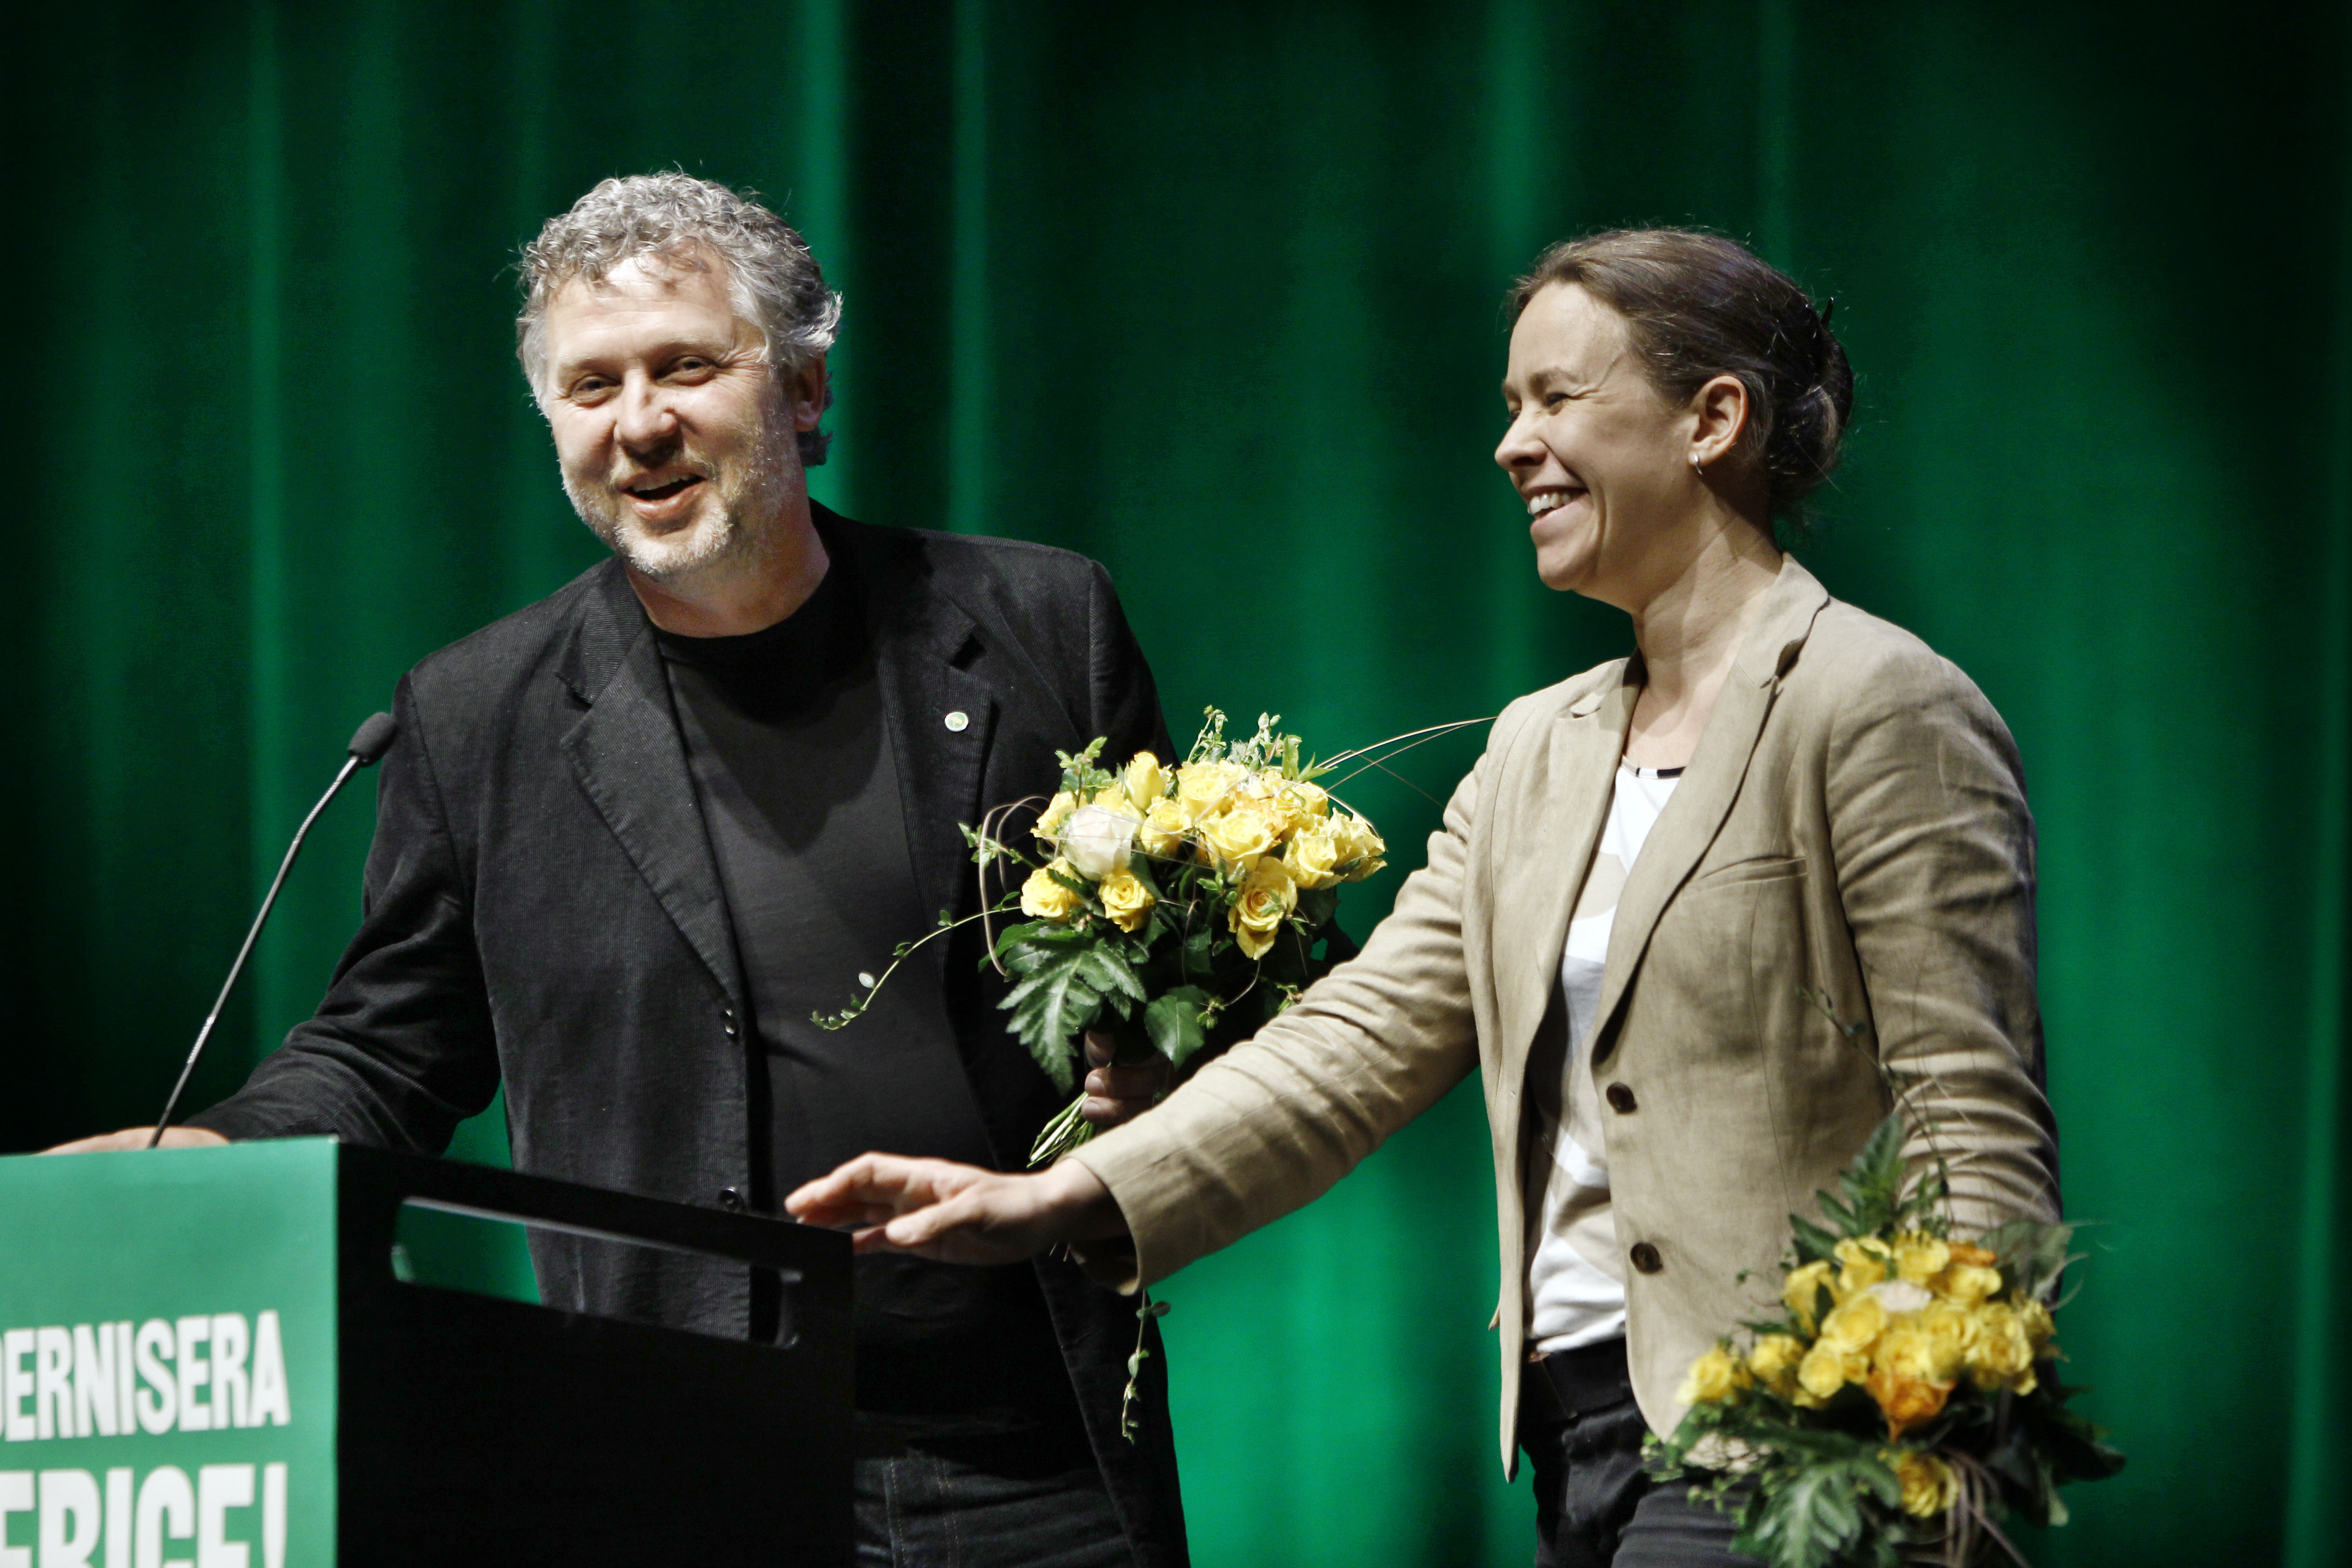 språkrör, Riksdagsvalet 2010, Peter Eriksson, Miljöpartiet, Maria Wetterstrand, Kongress